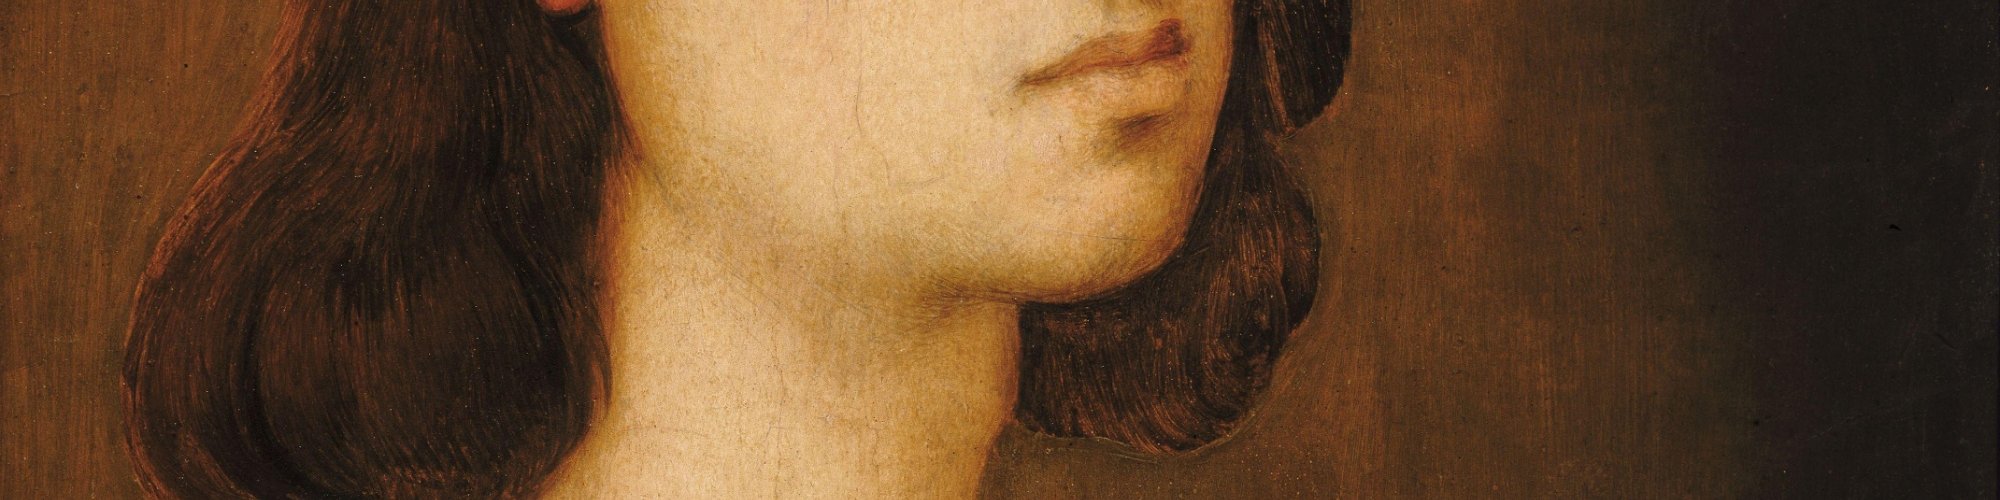 Presunto autoritratto (1506 circa), Galleria degli Uffizi, Firenze